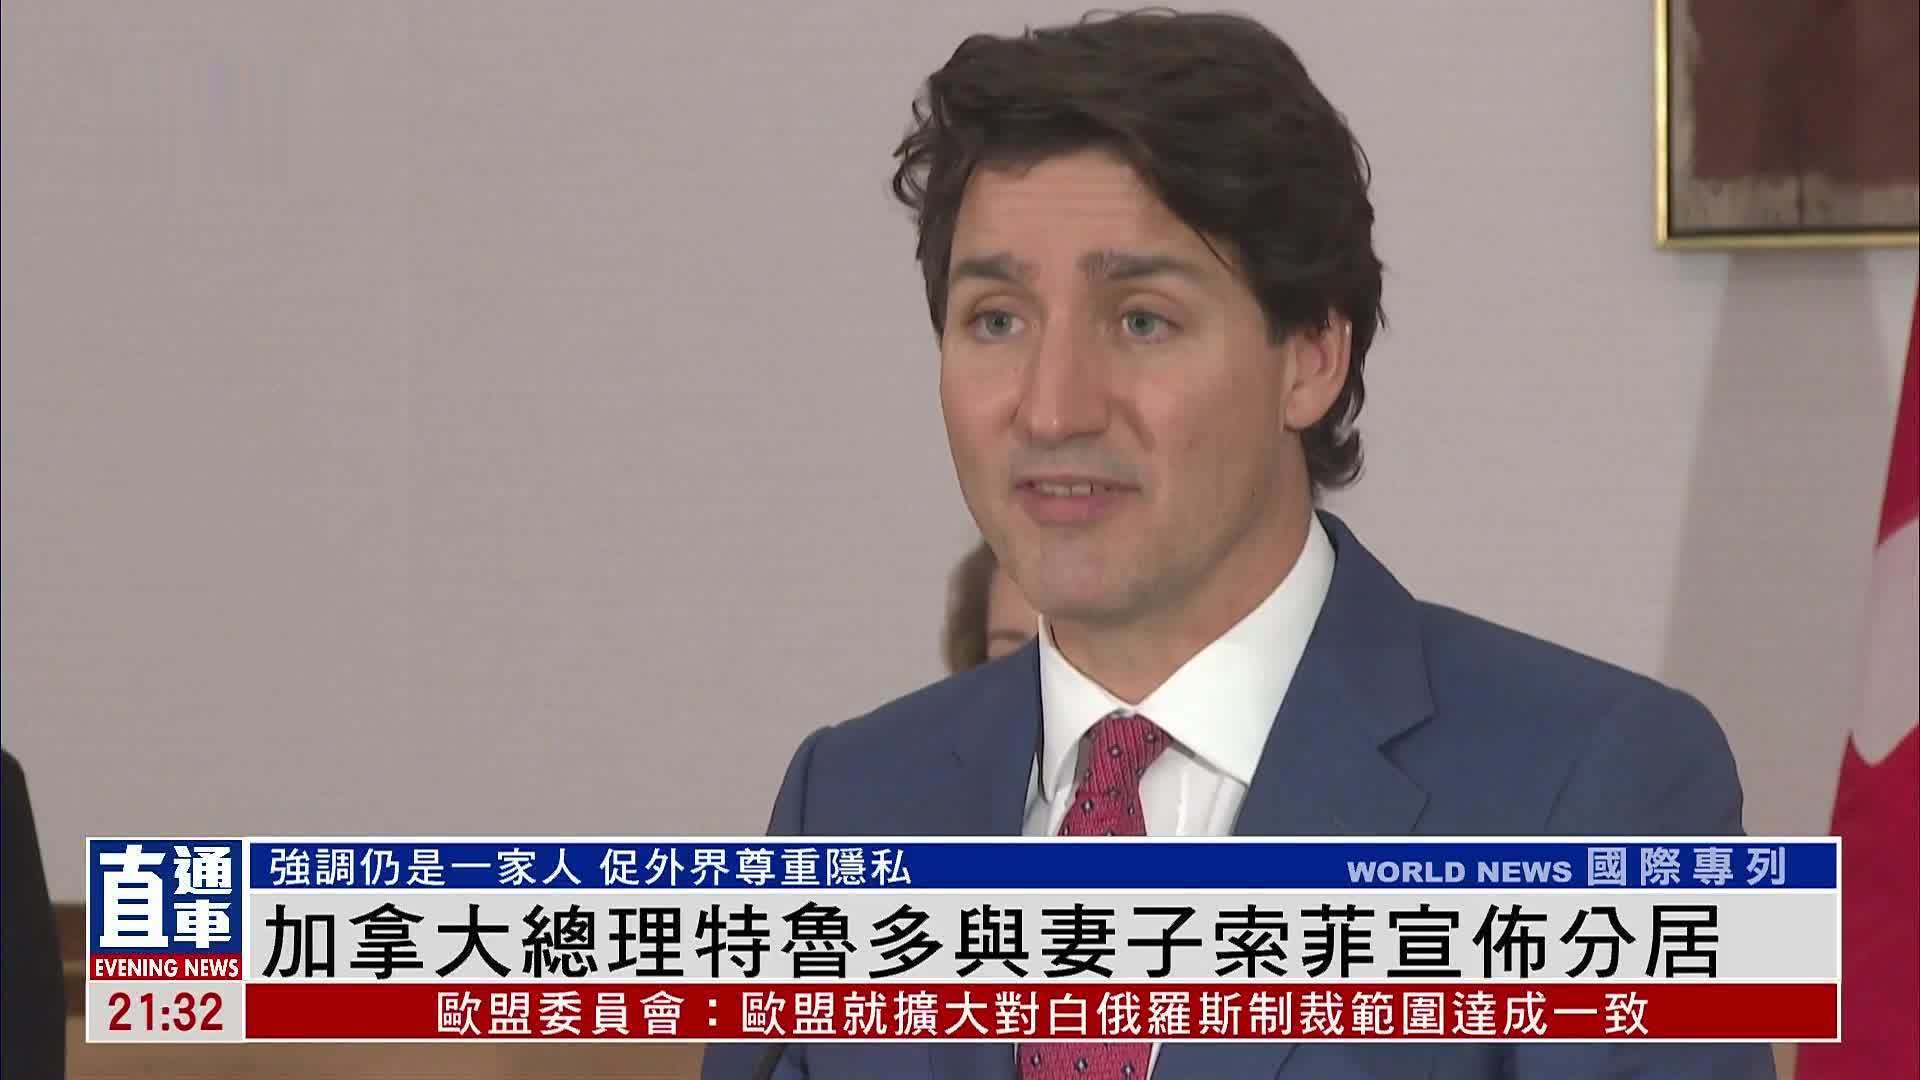 加拿大总理特鲁多与妻子索菲宣布分居